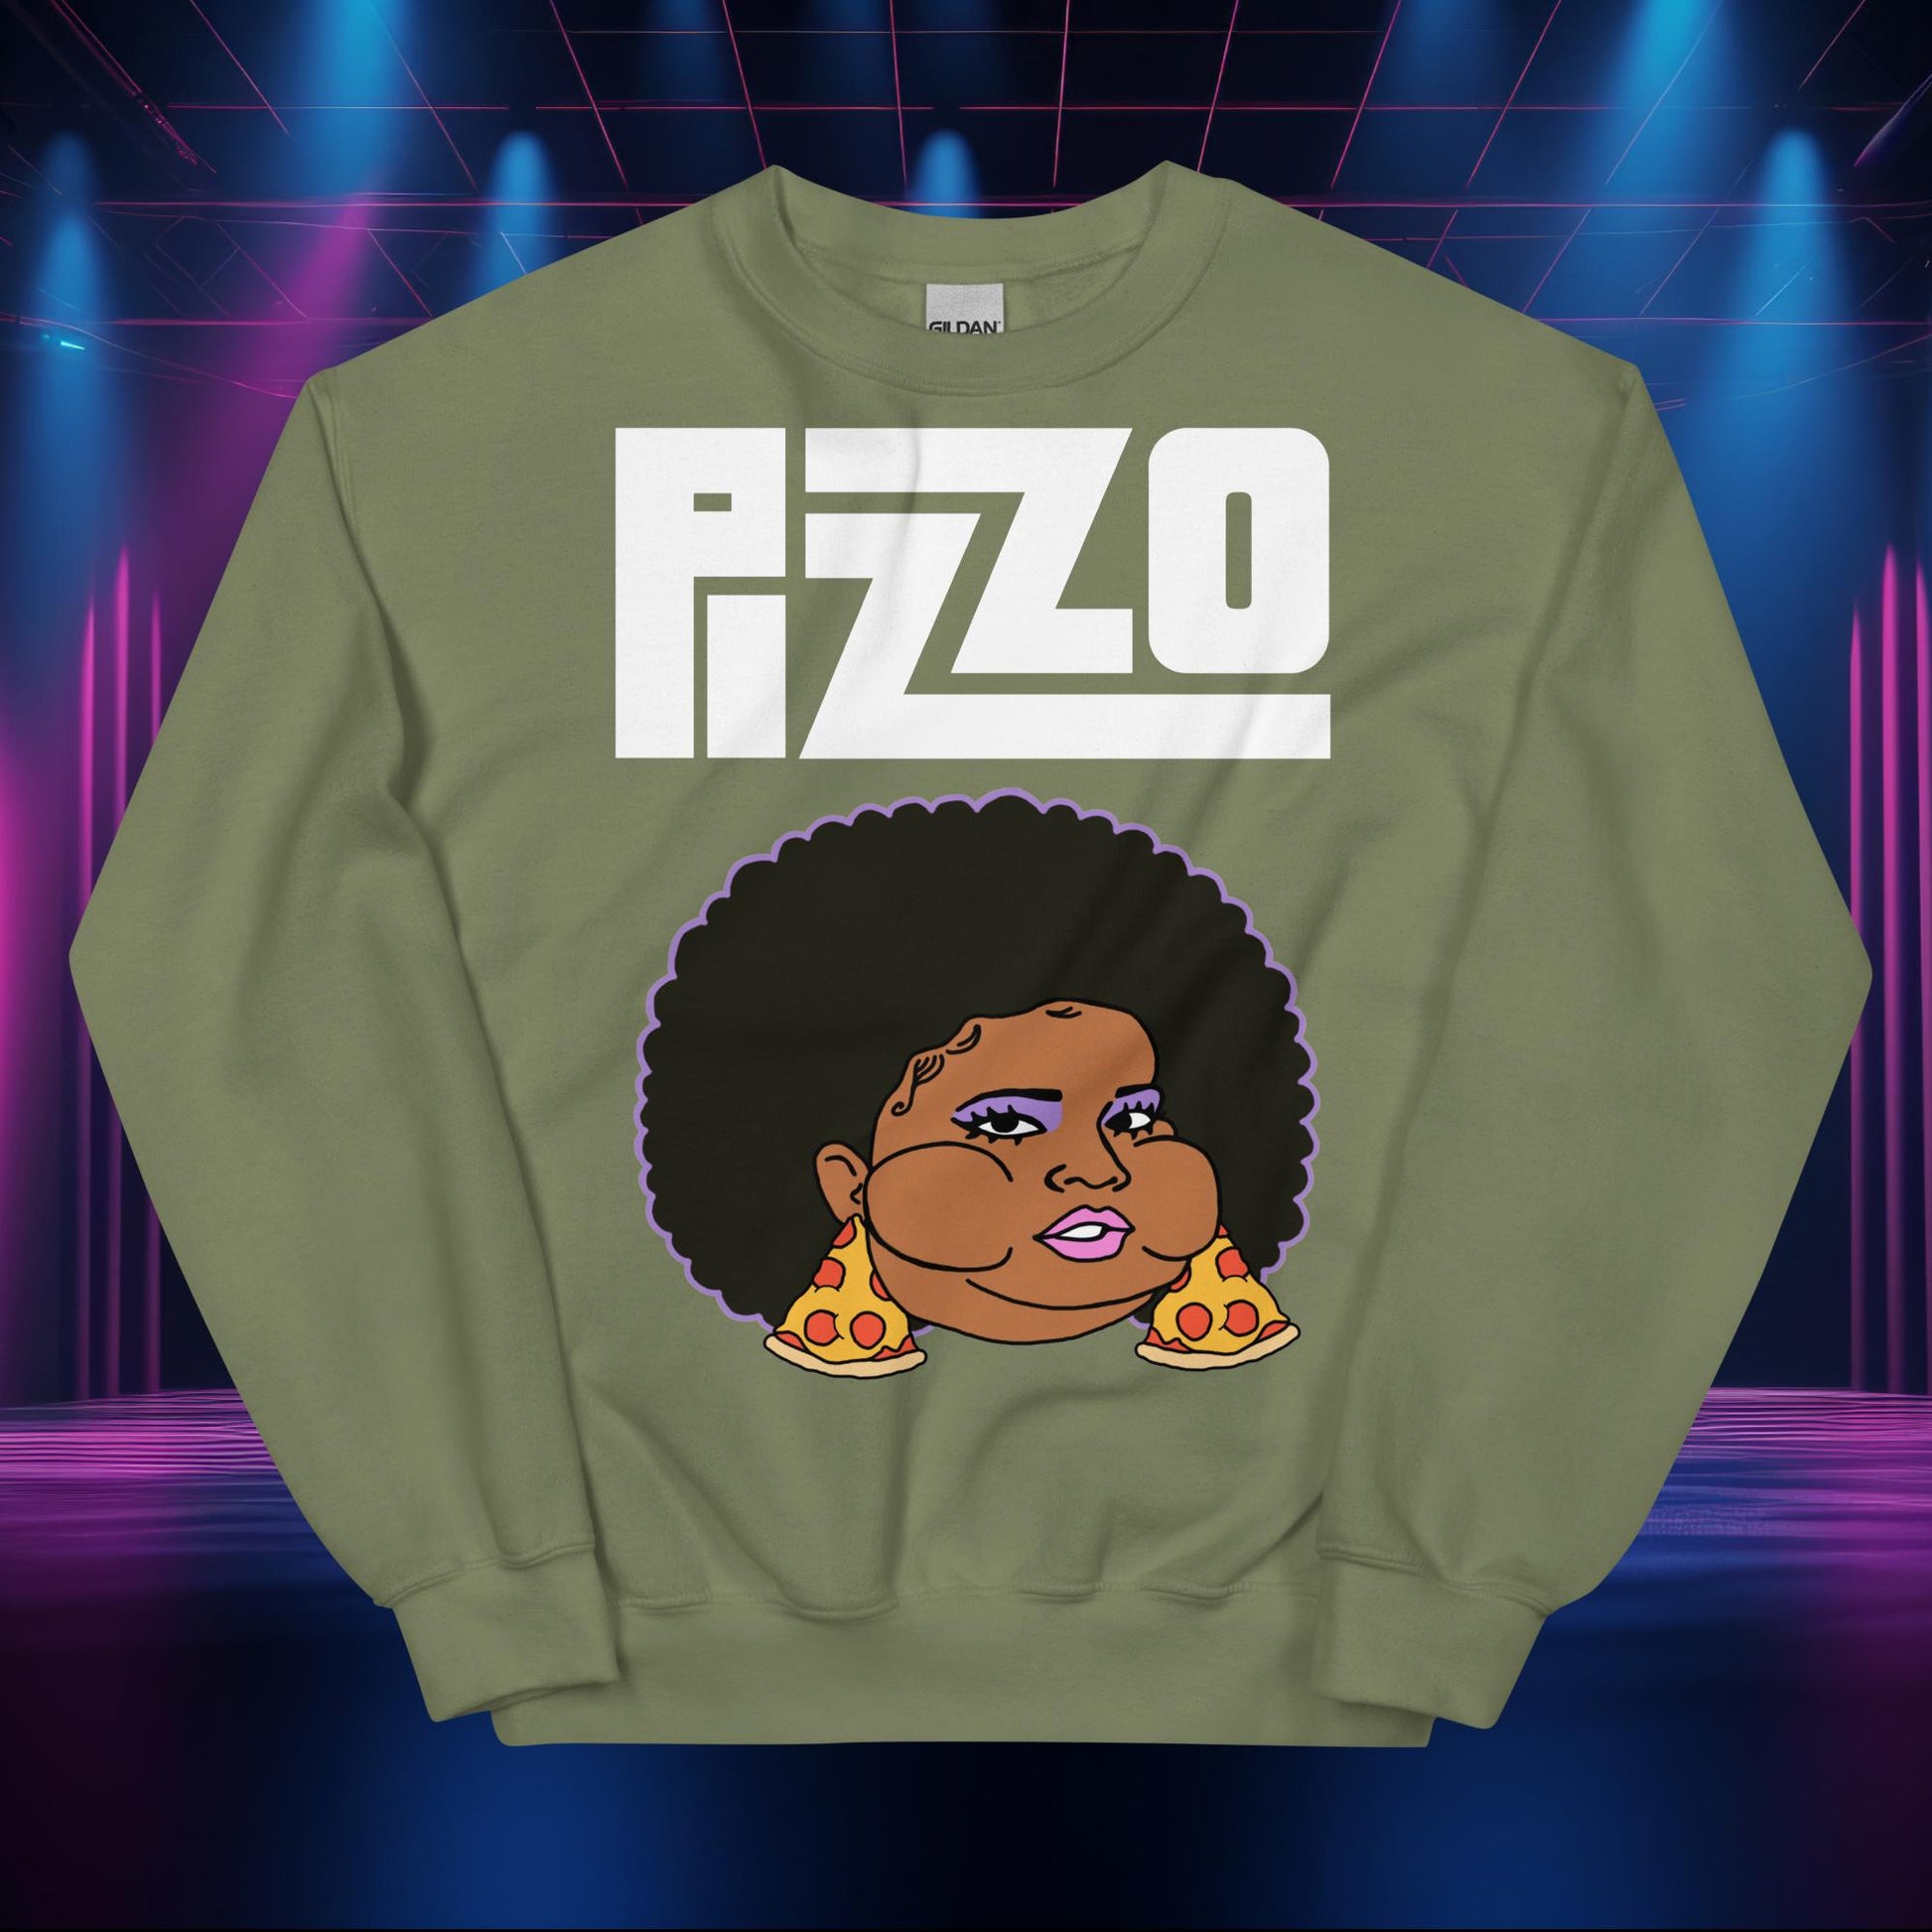 Pizzo Lizzo Pizza Lizzo Merch Lizzo Gift Body Positivity Body empowerment Lizzo Sweatshirt Next Cult Brand